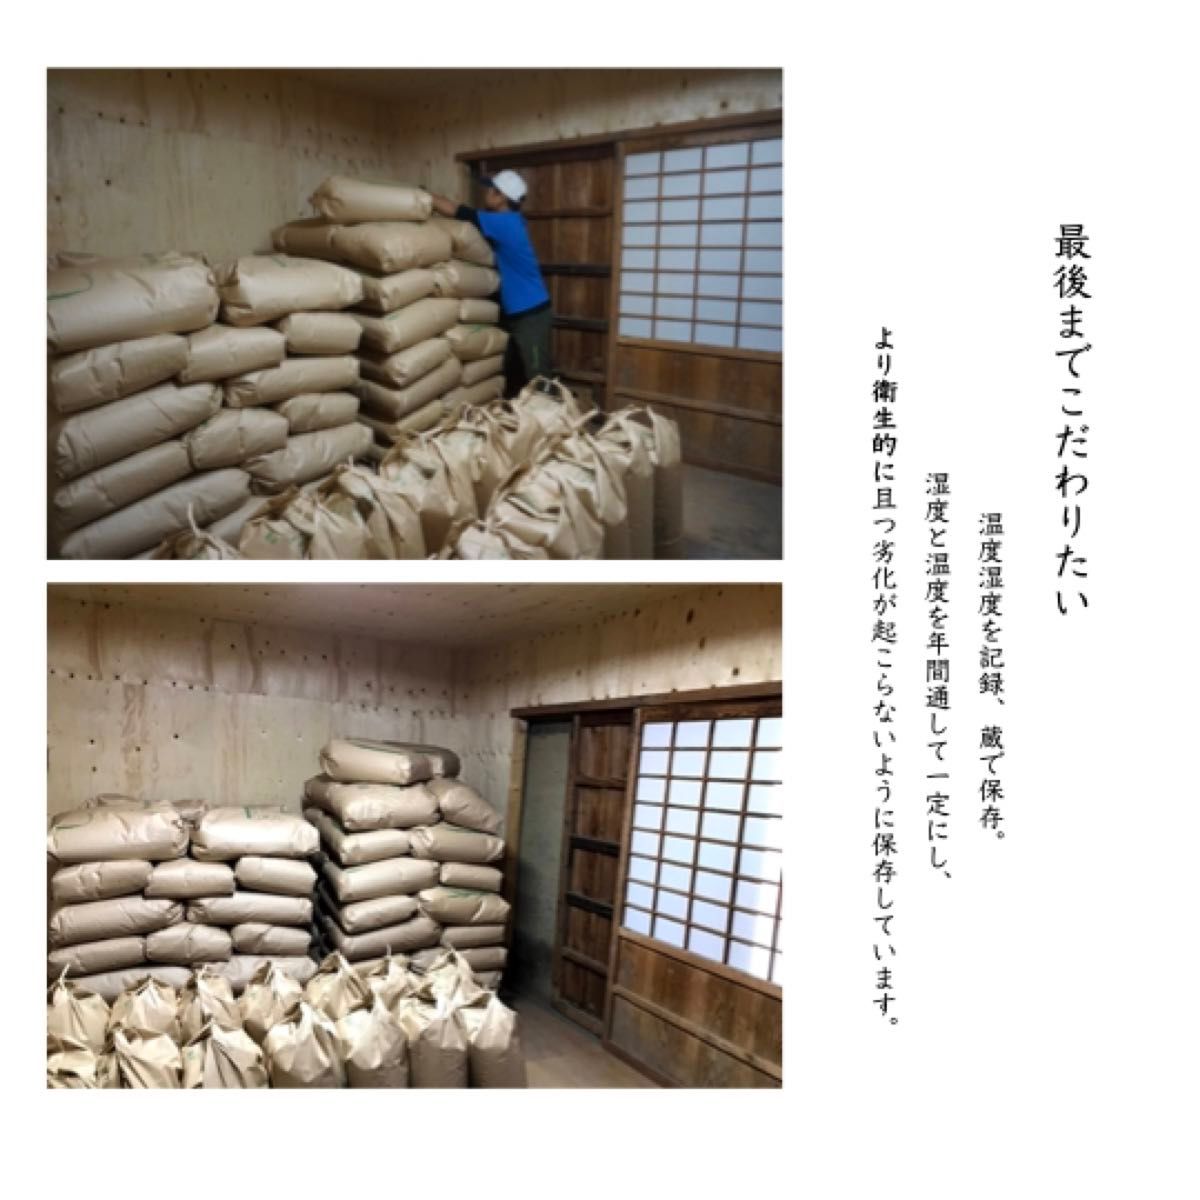 【品質保証】玄米 20kg コシヒカリ お米 米 群馬県産 高級米 農家直送